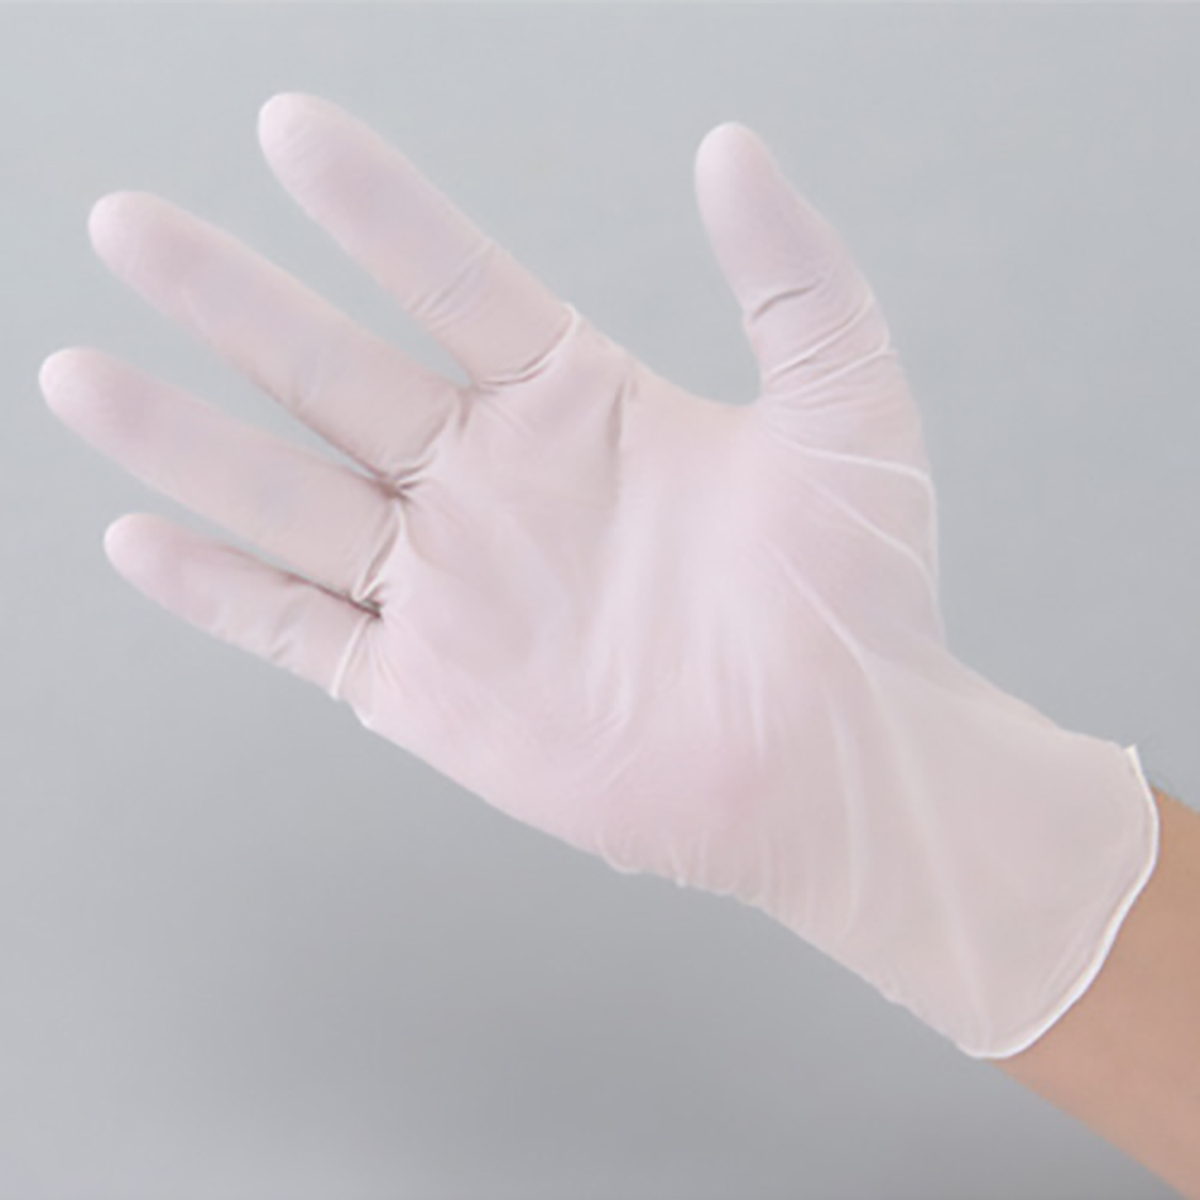 公式】パーマンショップ-ニトリルゴム手袋 粉なし M: 身体保護・安全